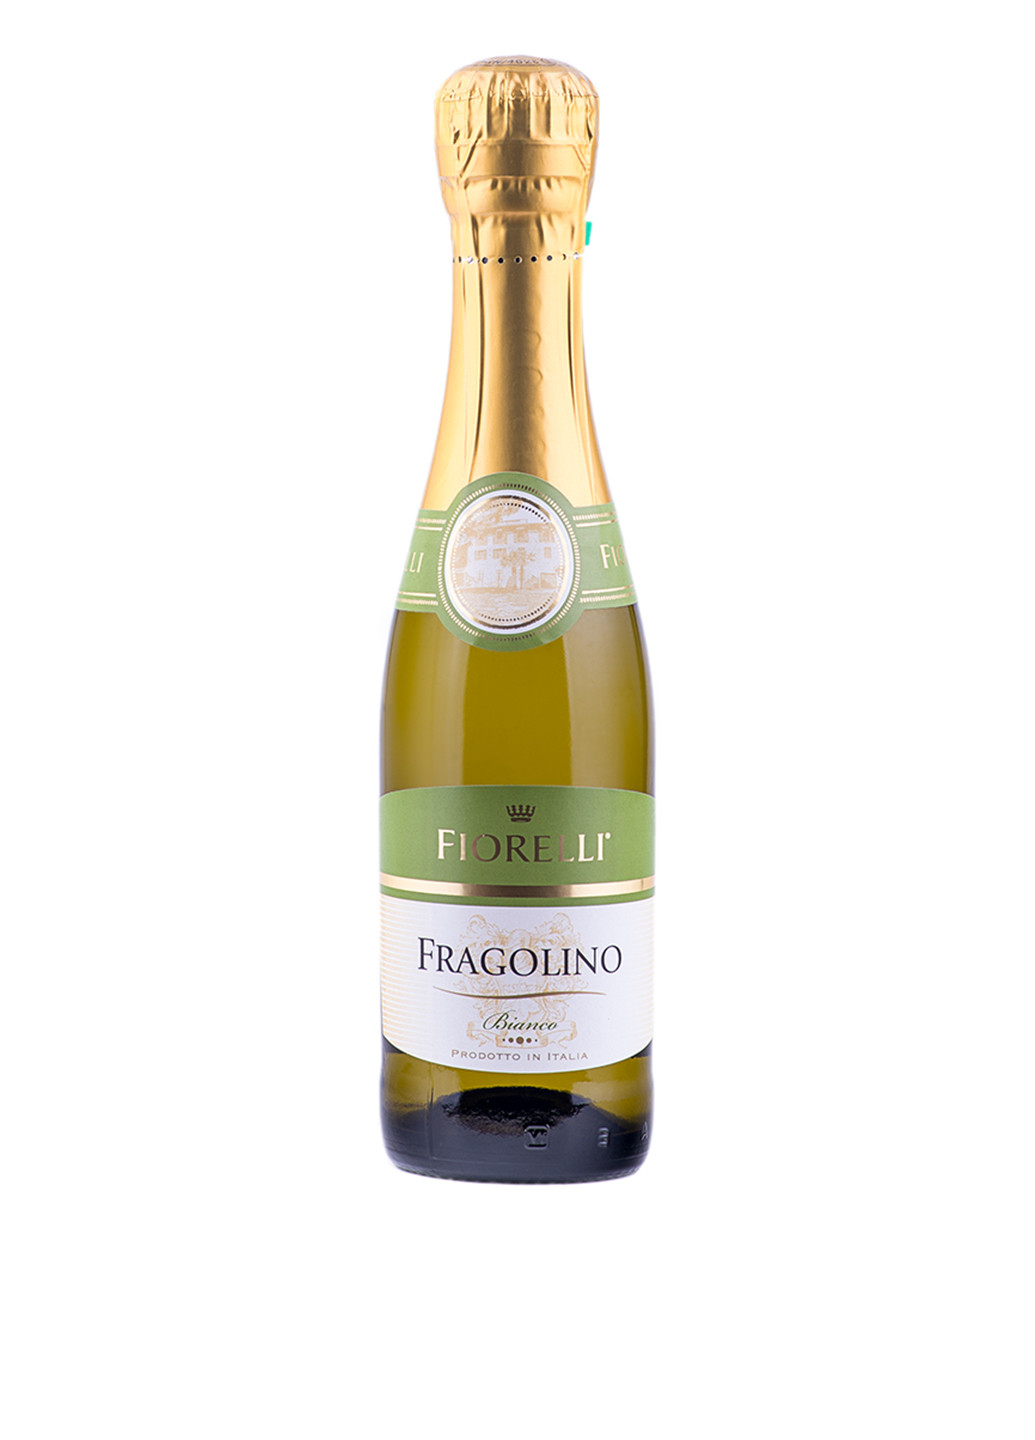 Напиток на основе вина Fragolino Bianco, 0.2 Fiorelli золотистое